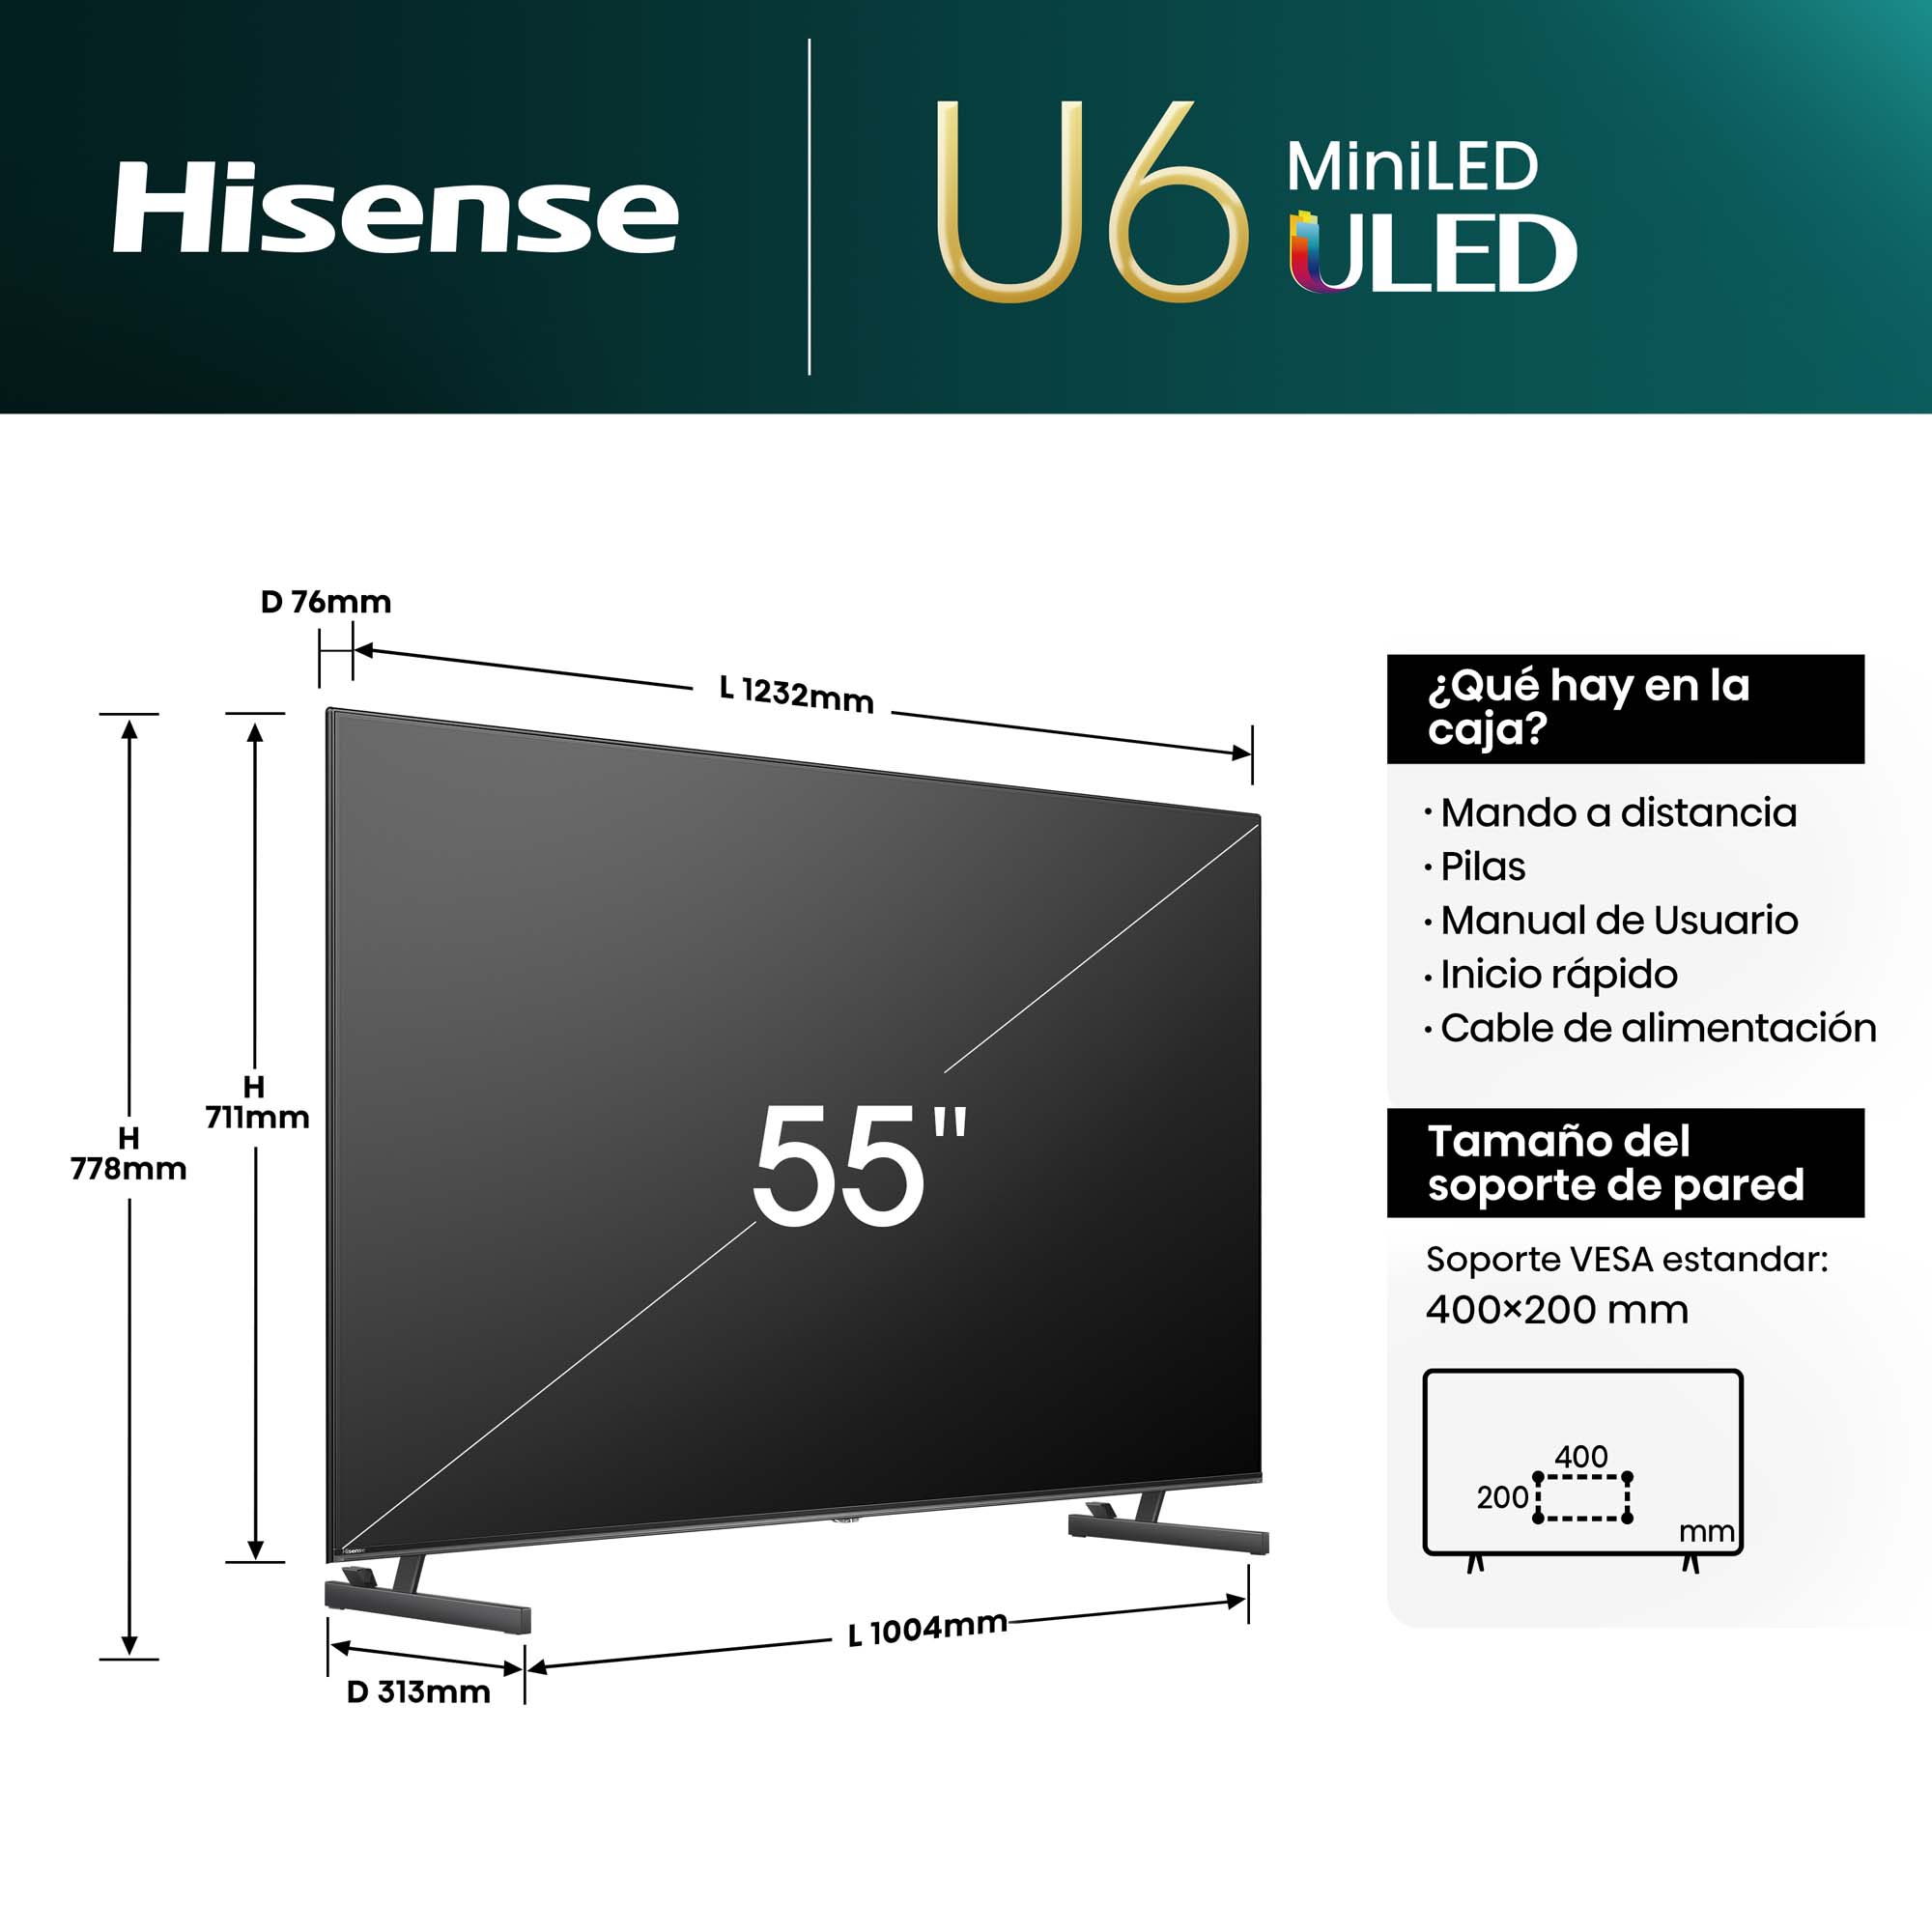 Hisense - Mini-LED TV 55U6NQ, 55 Pulgadas con Quantum Dot Colour